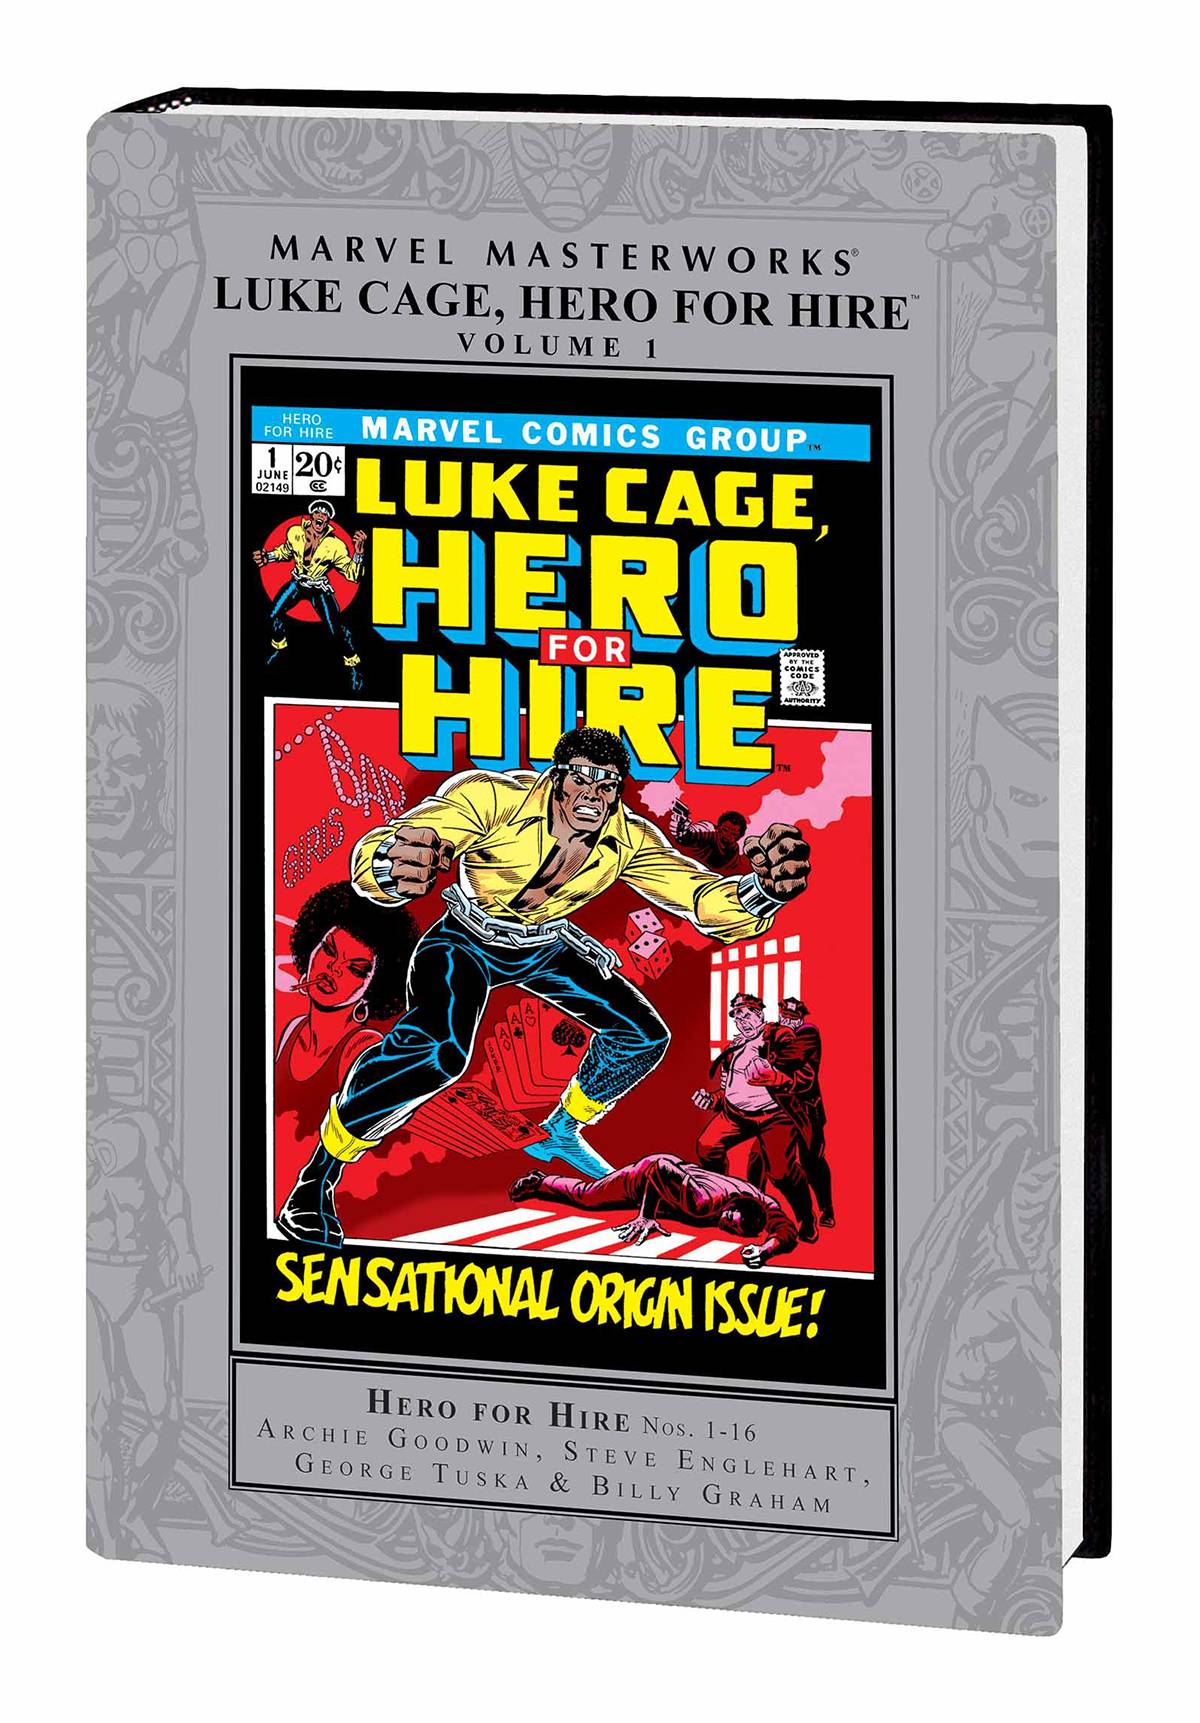 Marvel Masterworks Luke Cage Hero for Hire Hardcover Volume 1